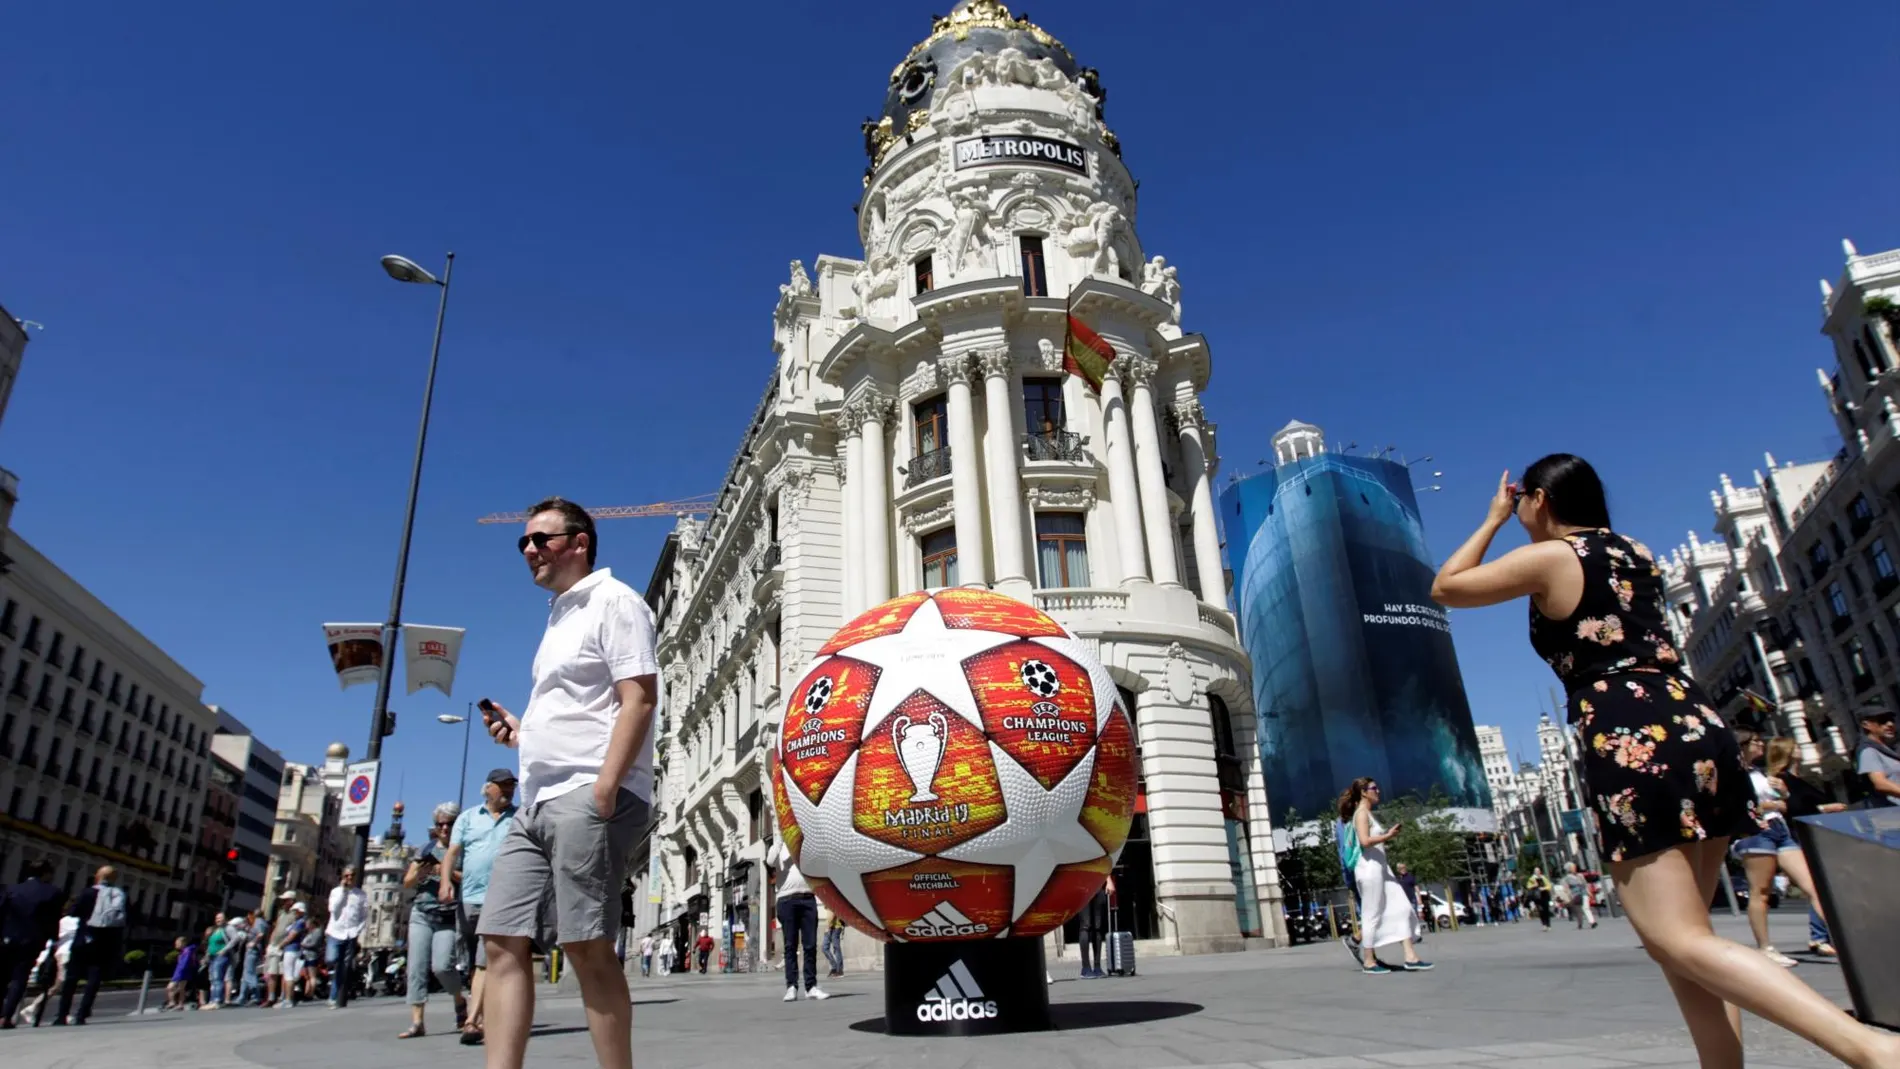 Vista de un balón publicitario de la Champions League en la Gran Vía